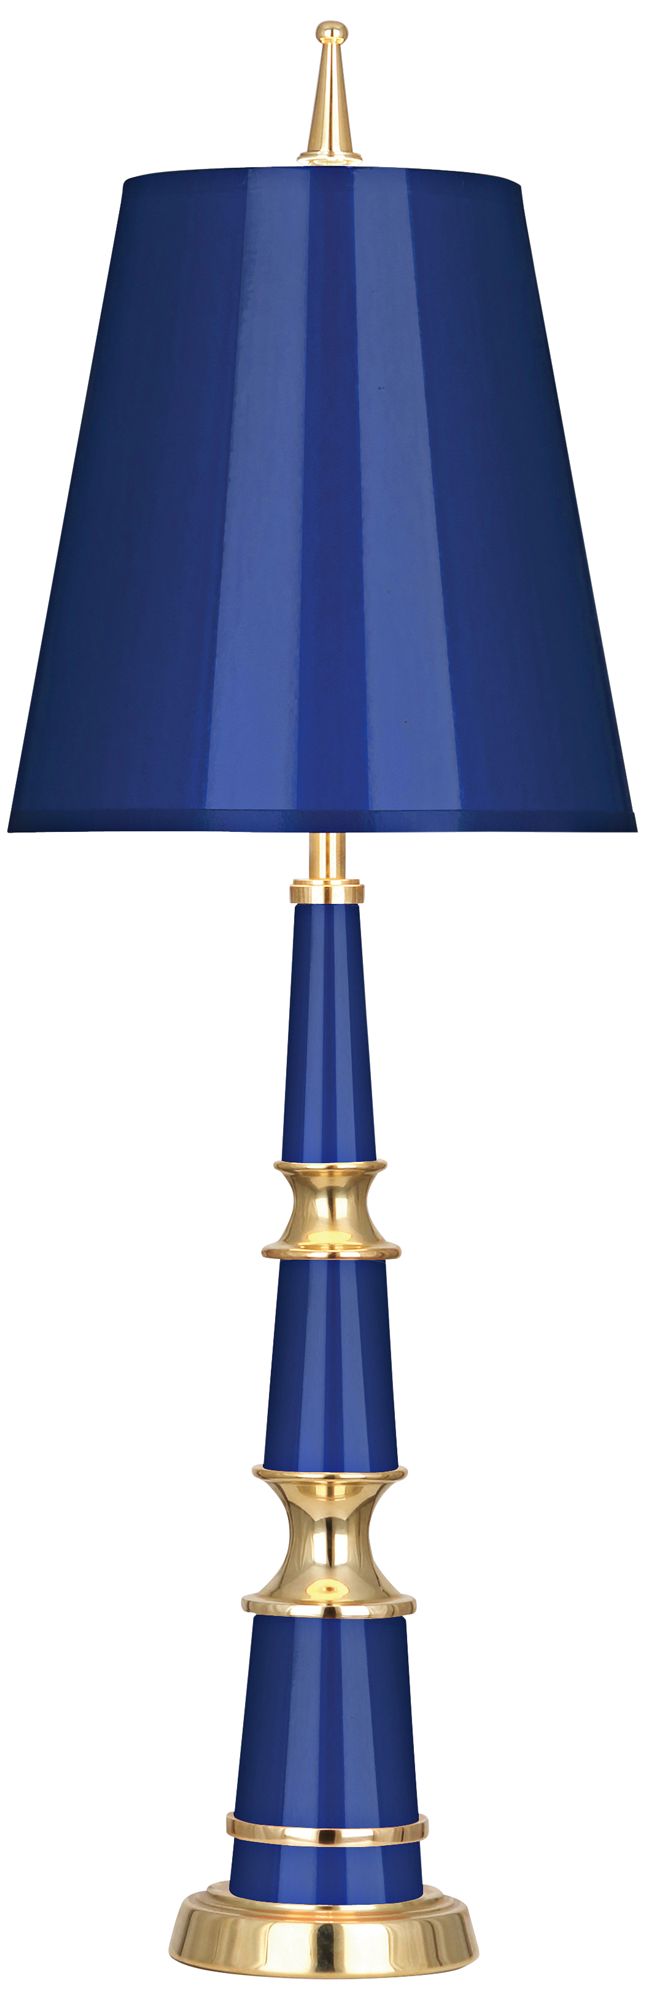 blue bedroom lamps